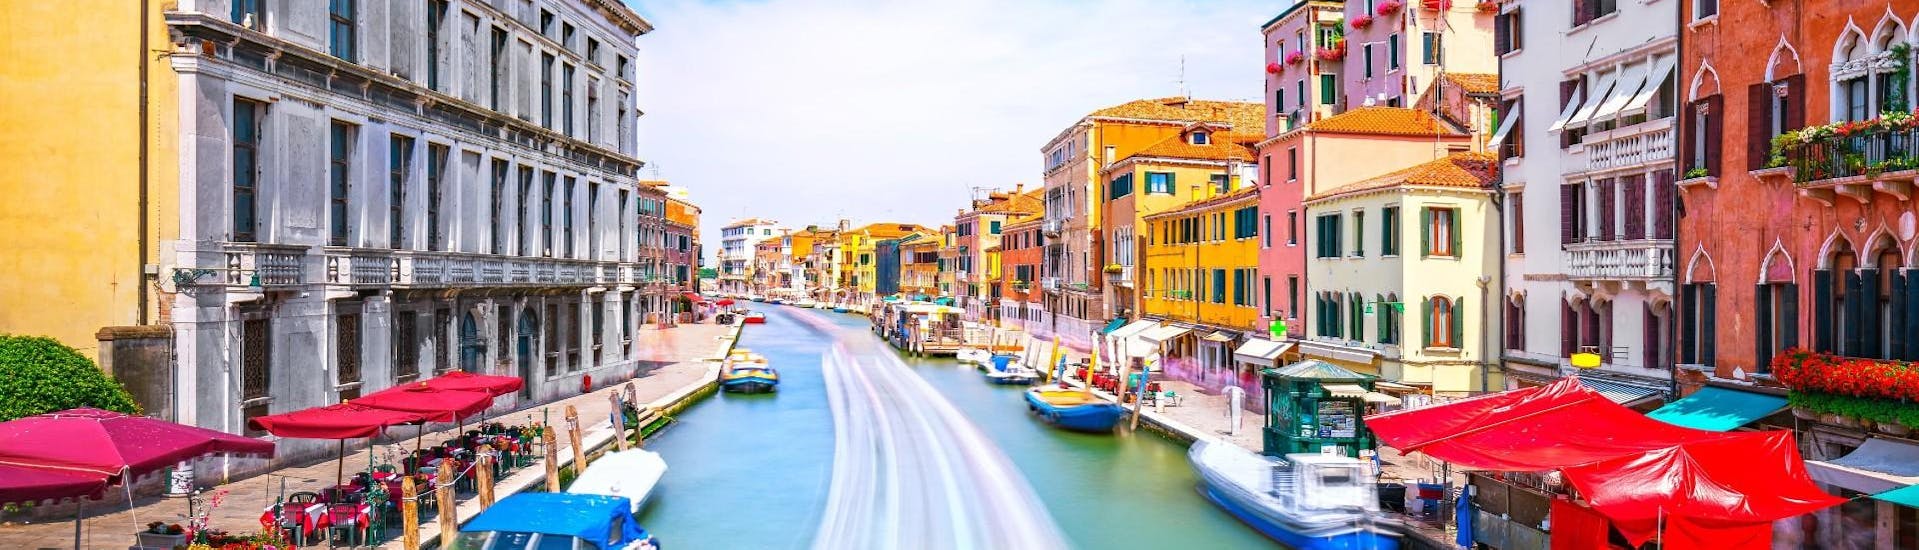 Paseo en barco por canales ocultos de Venecia y Gran Canal.